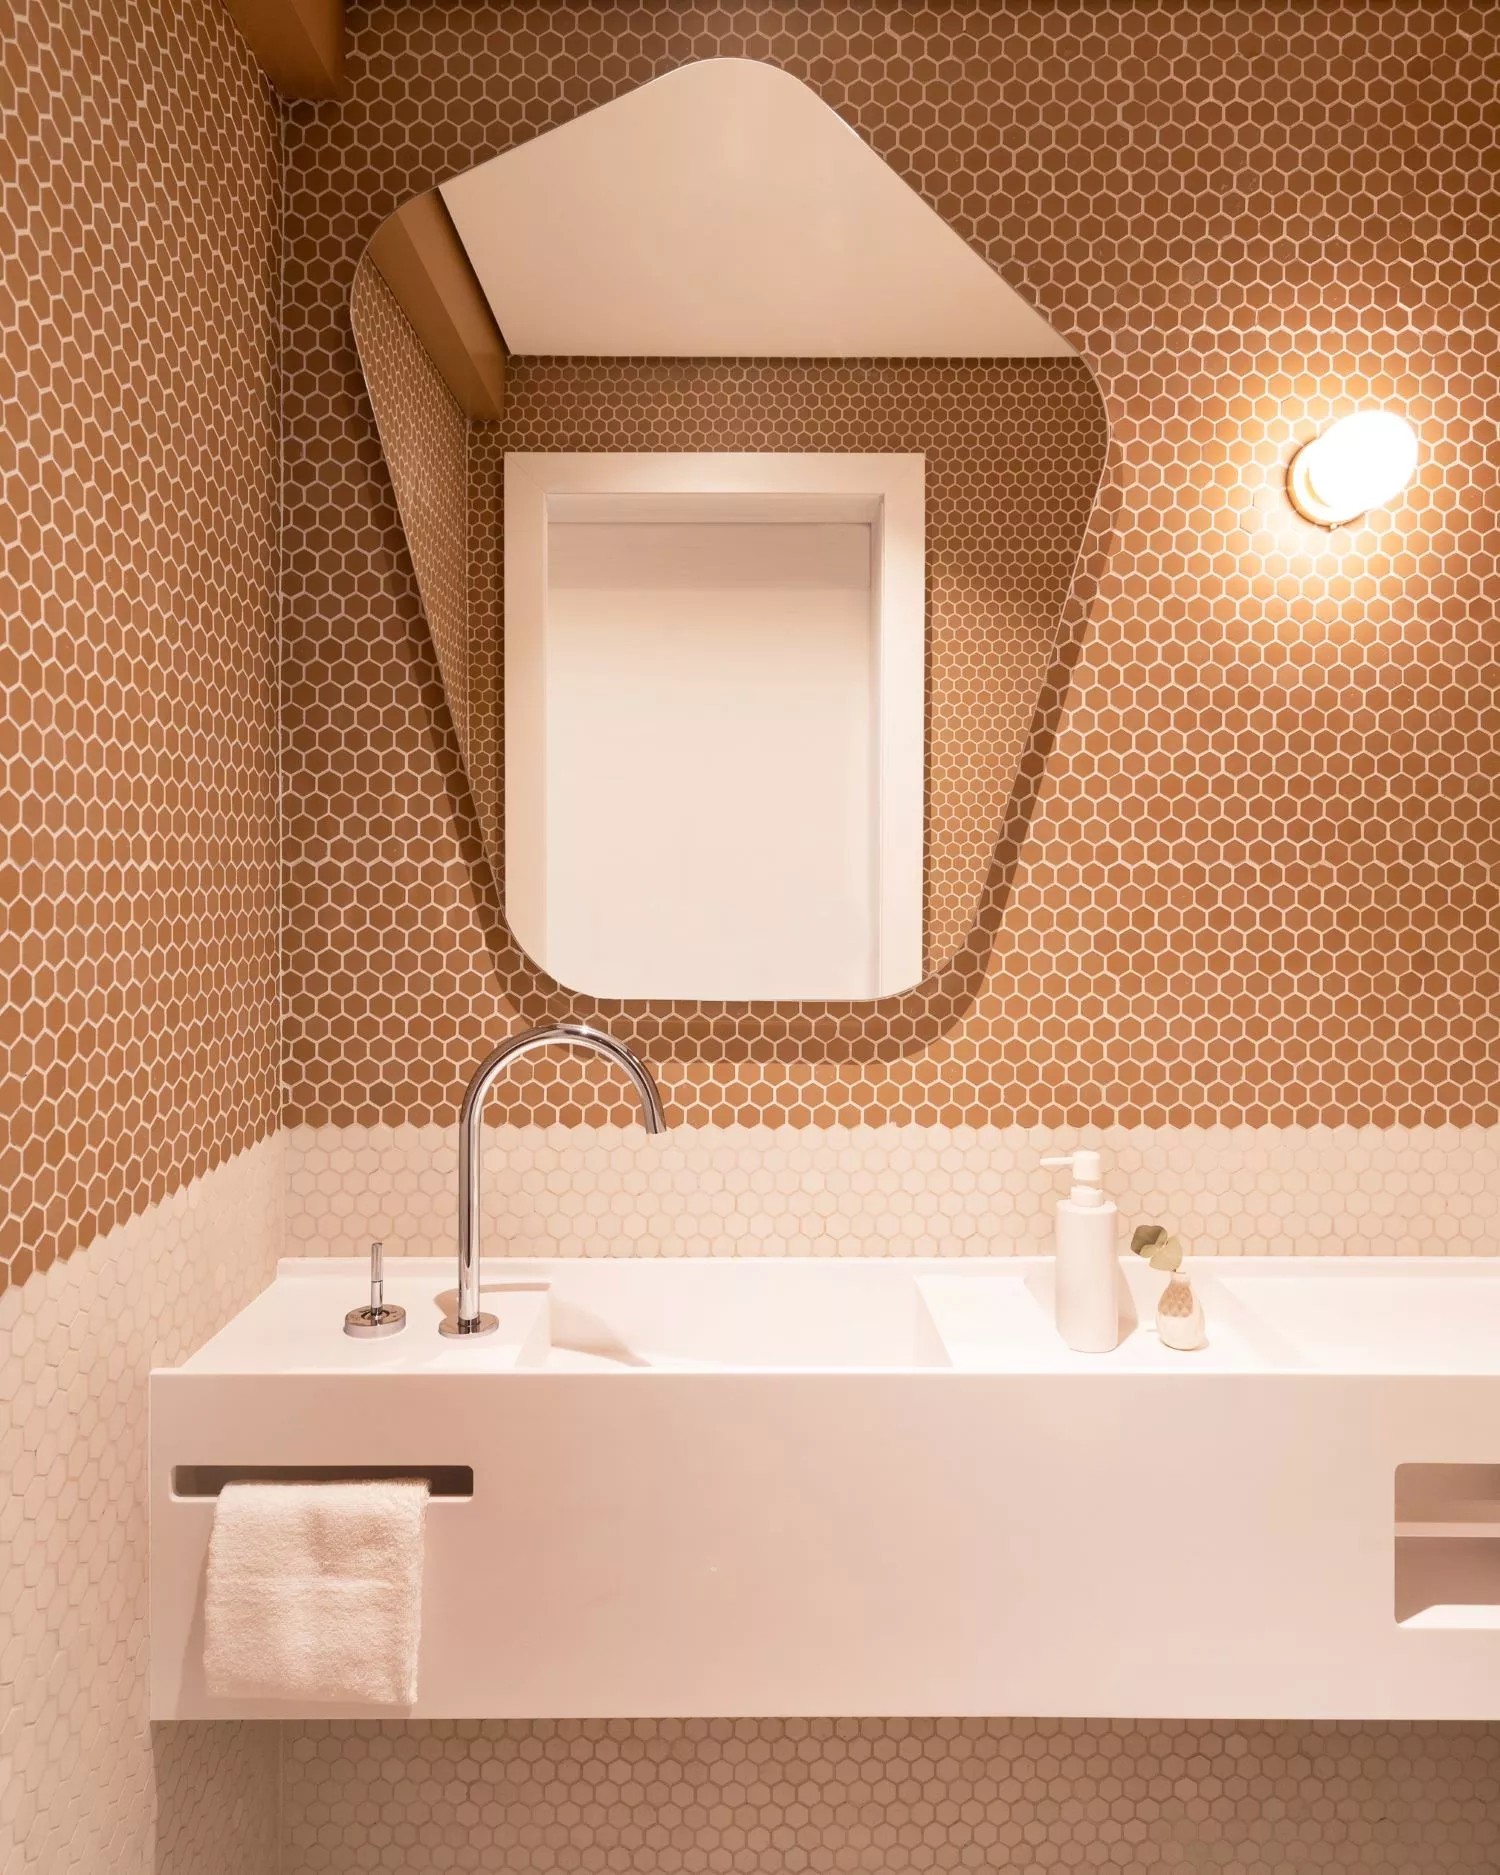 Pastilhas e bancada com vão embaixo são indicadas para banheiros sem janelas. Projeto do Voilà Studio — Foto: Roberta Gewehr / Divulgação